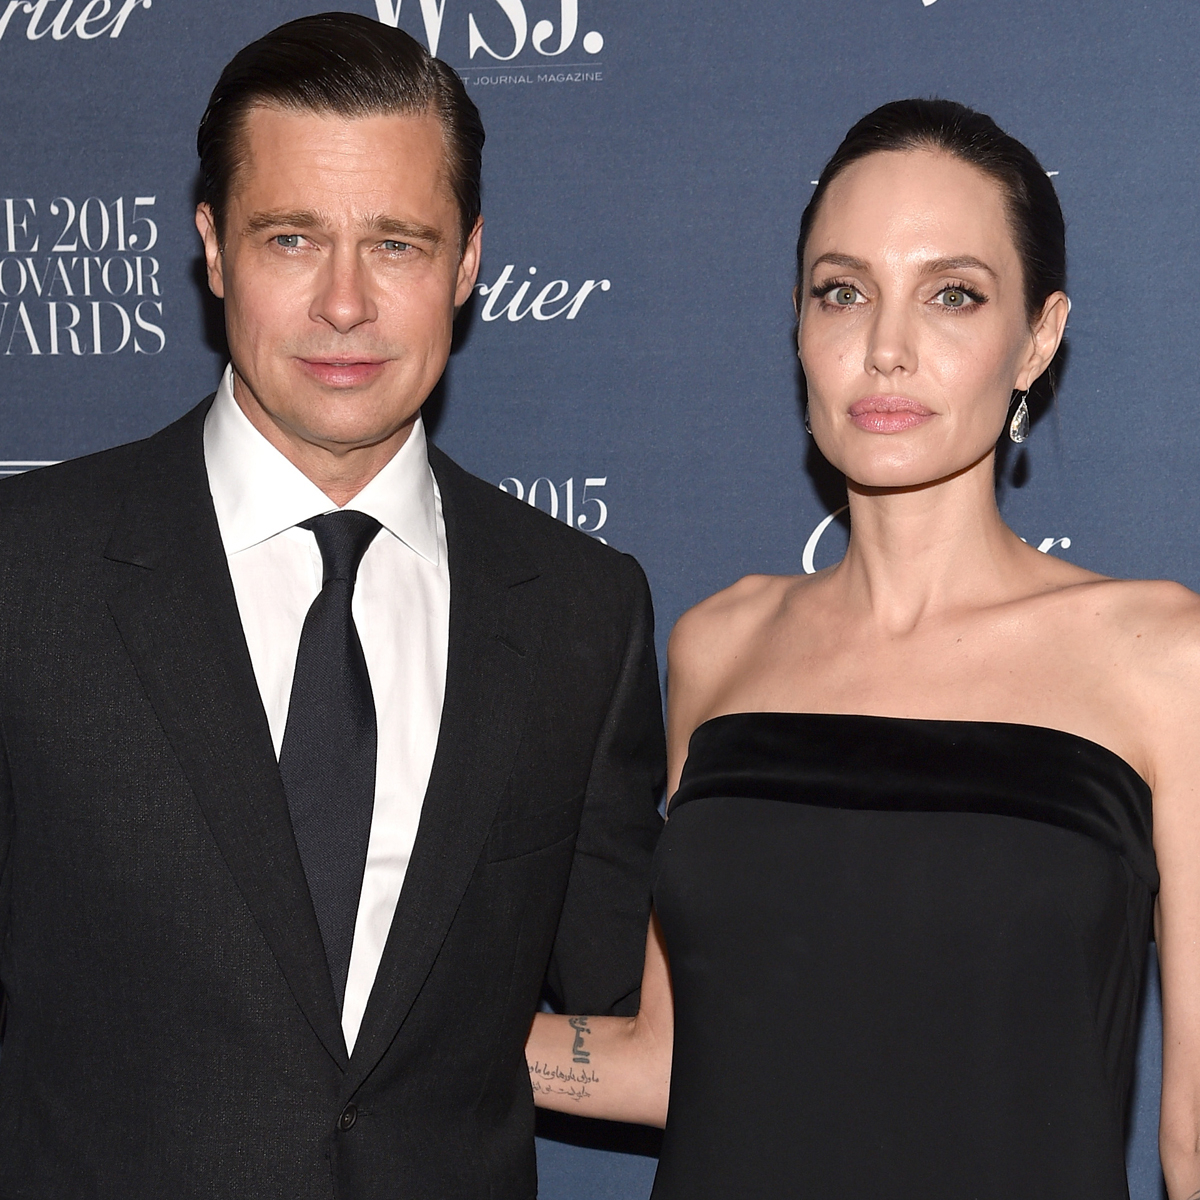 Твърди се, че Брад Пит е малтретирал физически Анджелина Джоли преди инцидента със самолета през 2016 г.